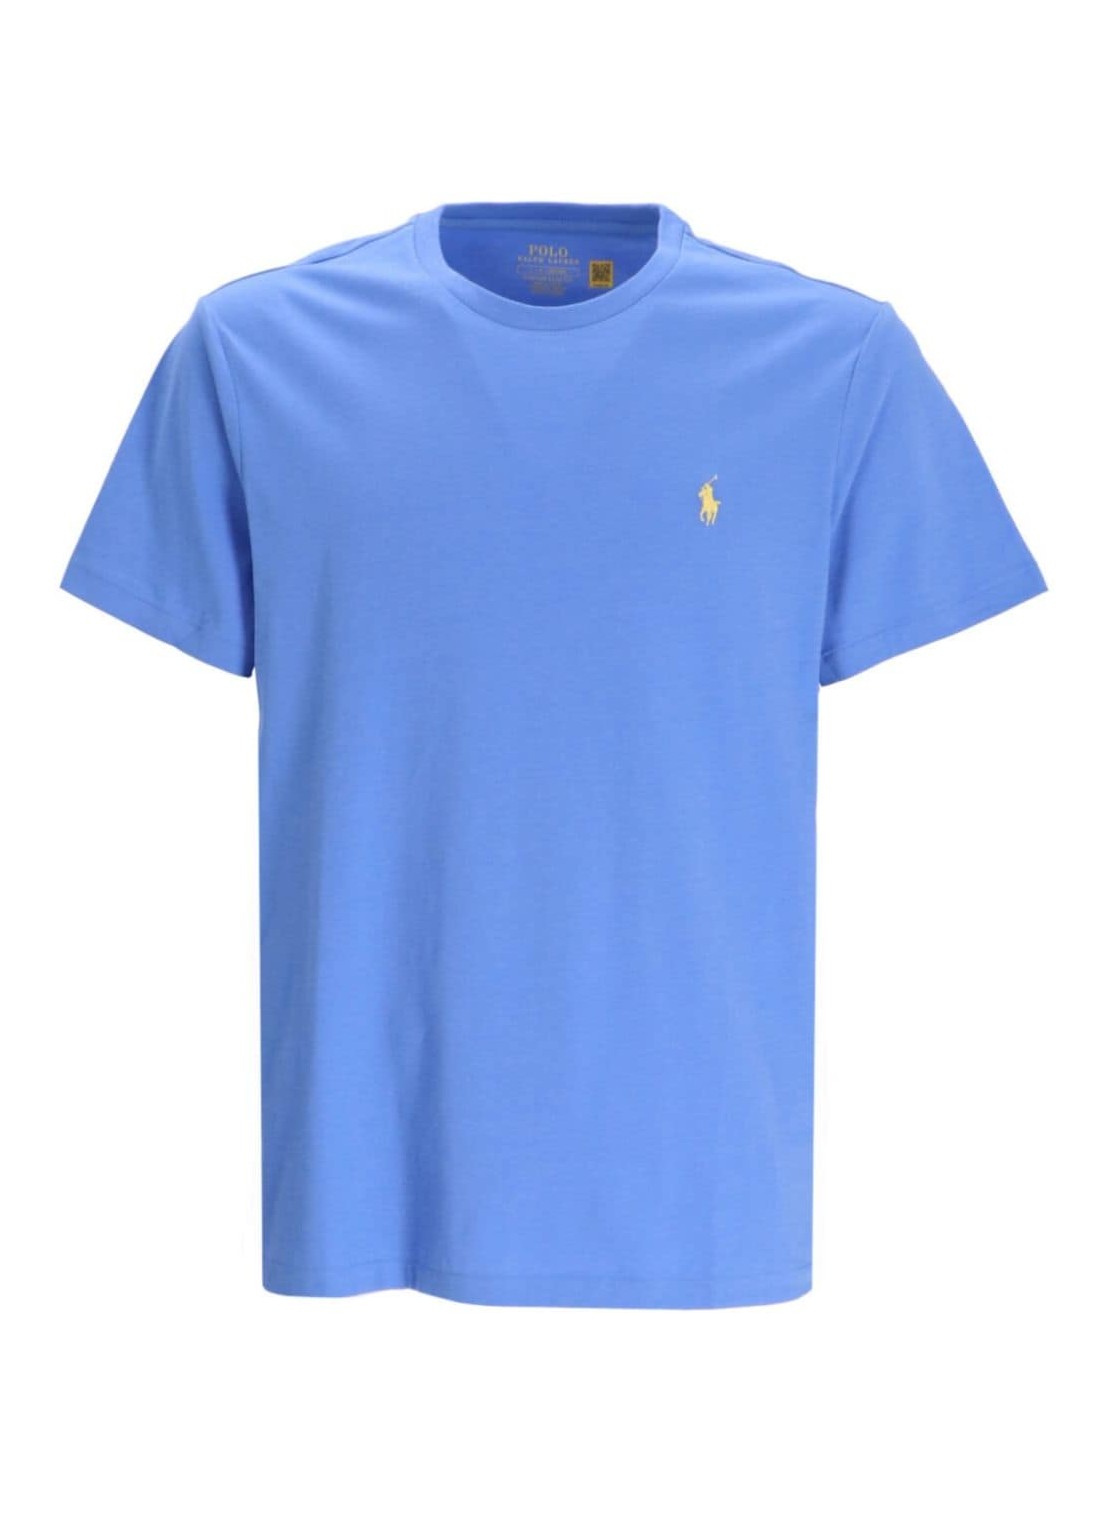 Camiseta polo ralph lauren t-shirt man sscncmslm2-short sleeve-t-shirt 710671438344 summer blue c125